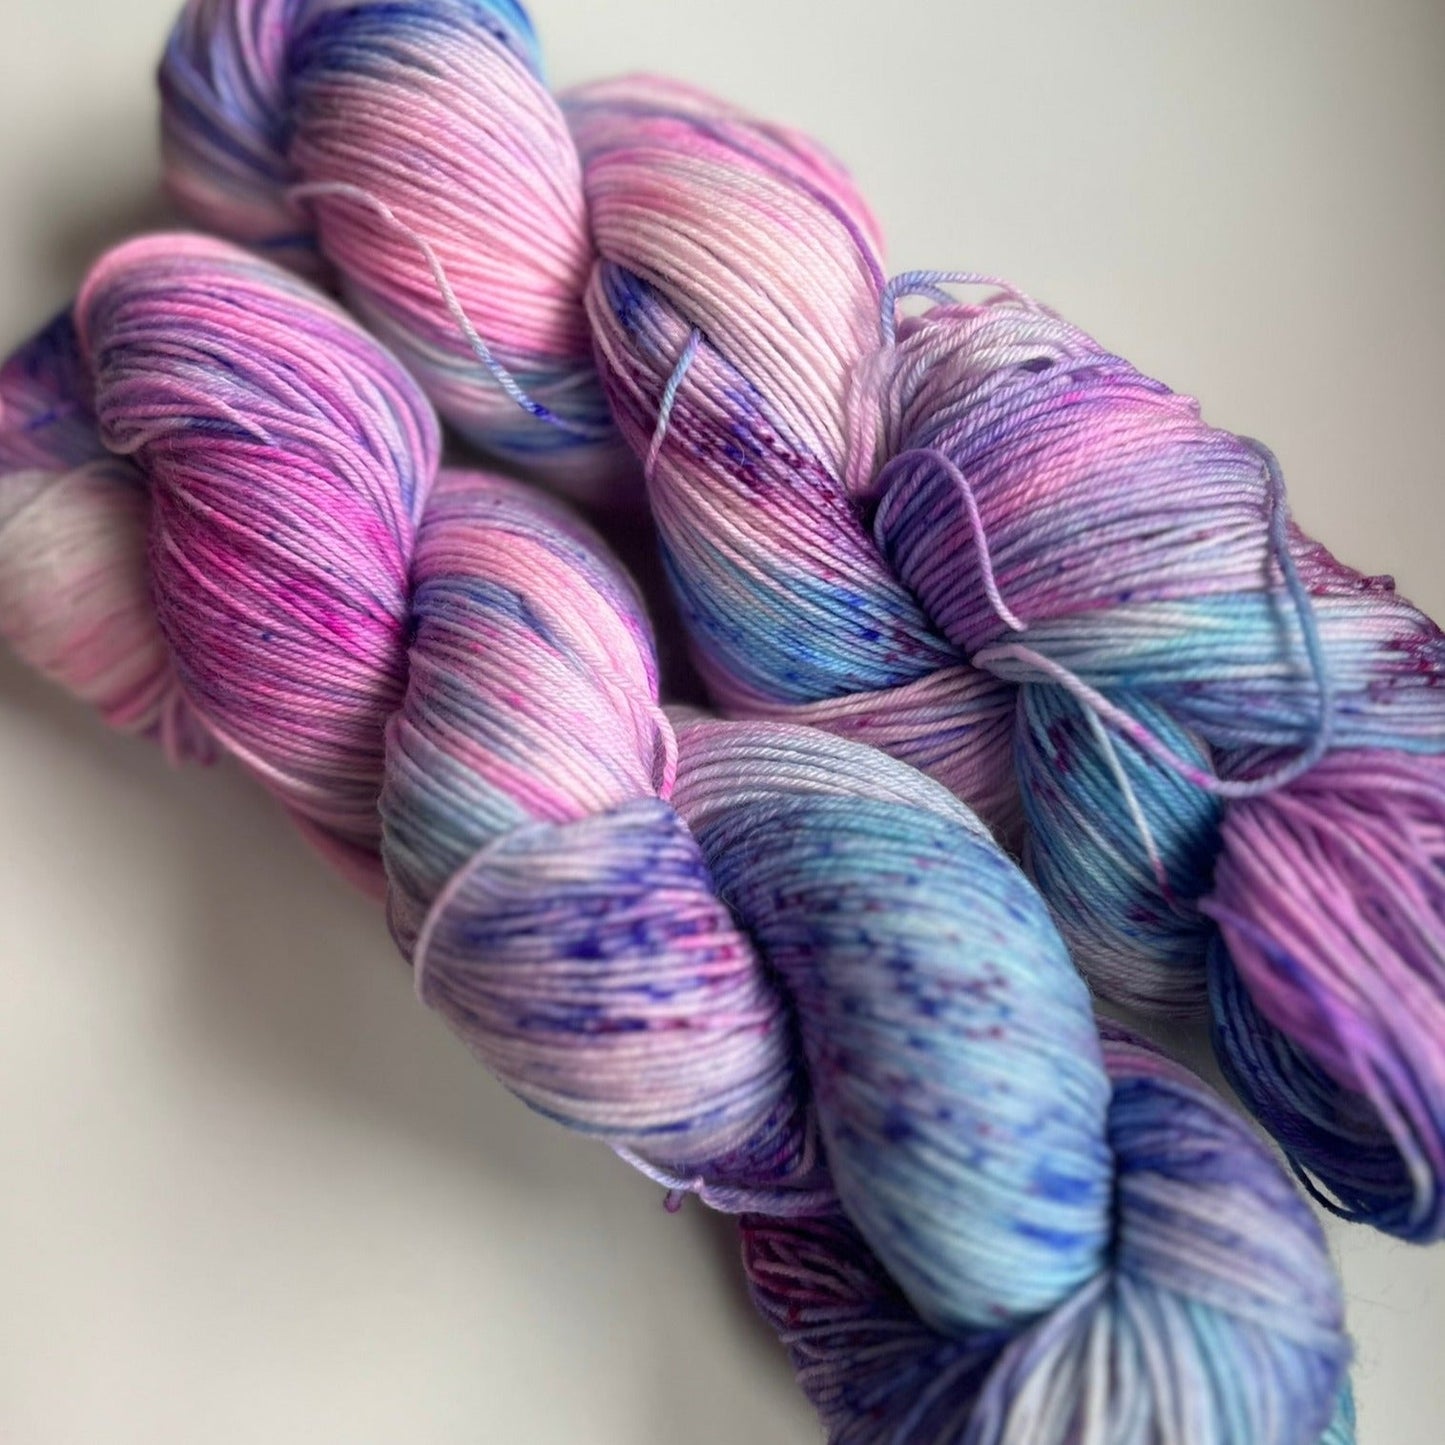 Mermaid Hair - Hand dyed variegated yarn - hot pink blue purple